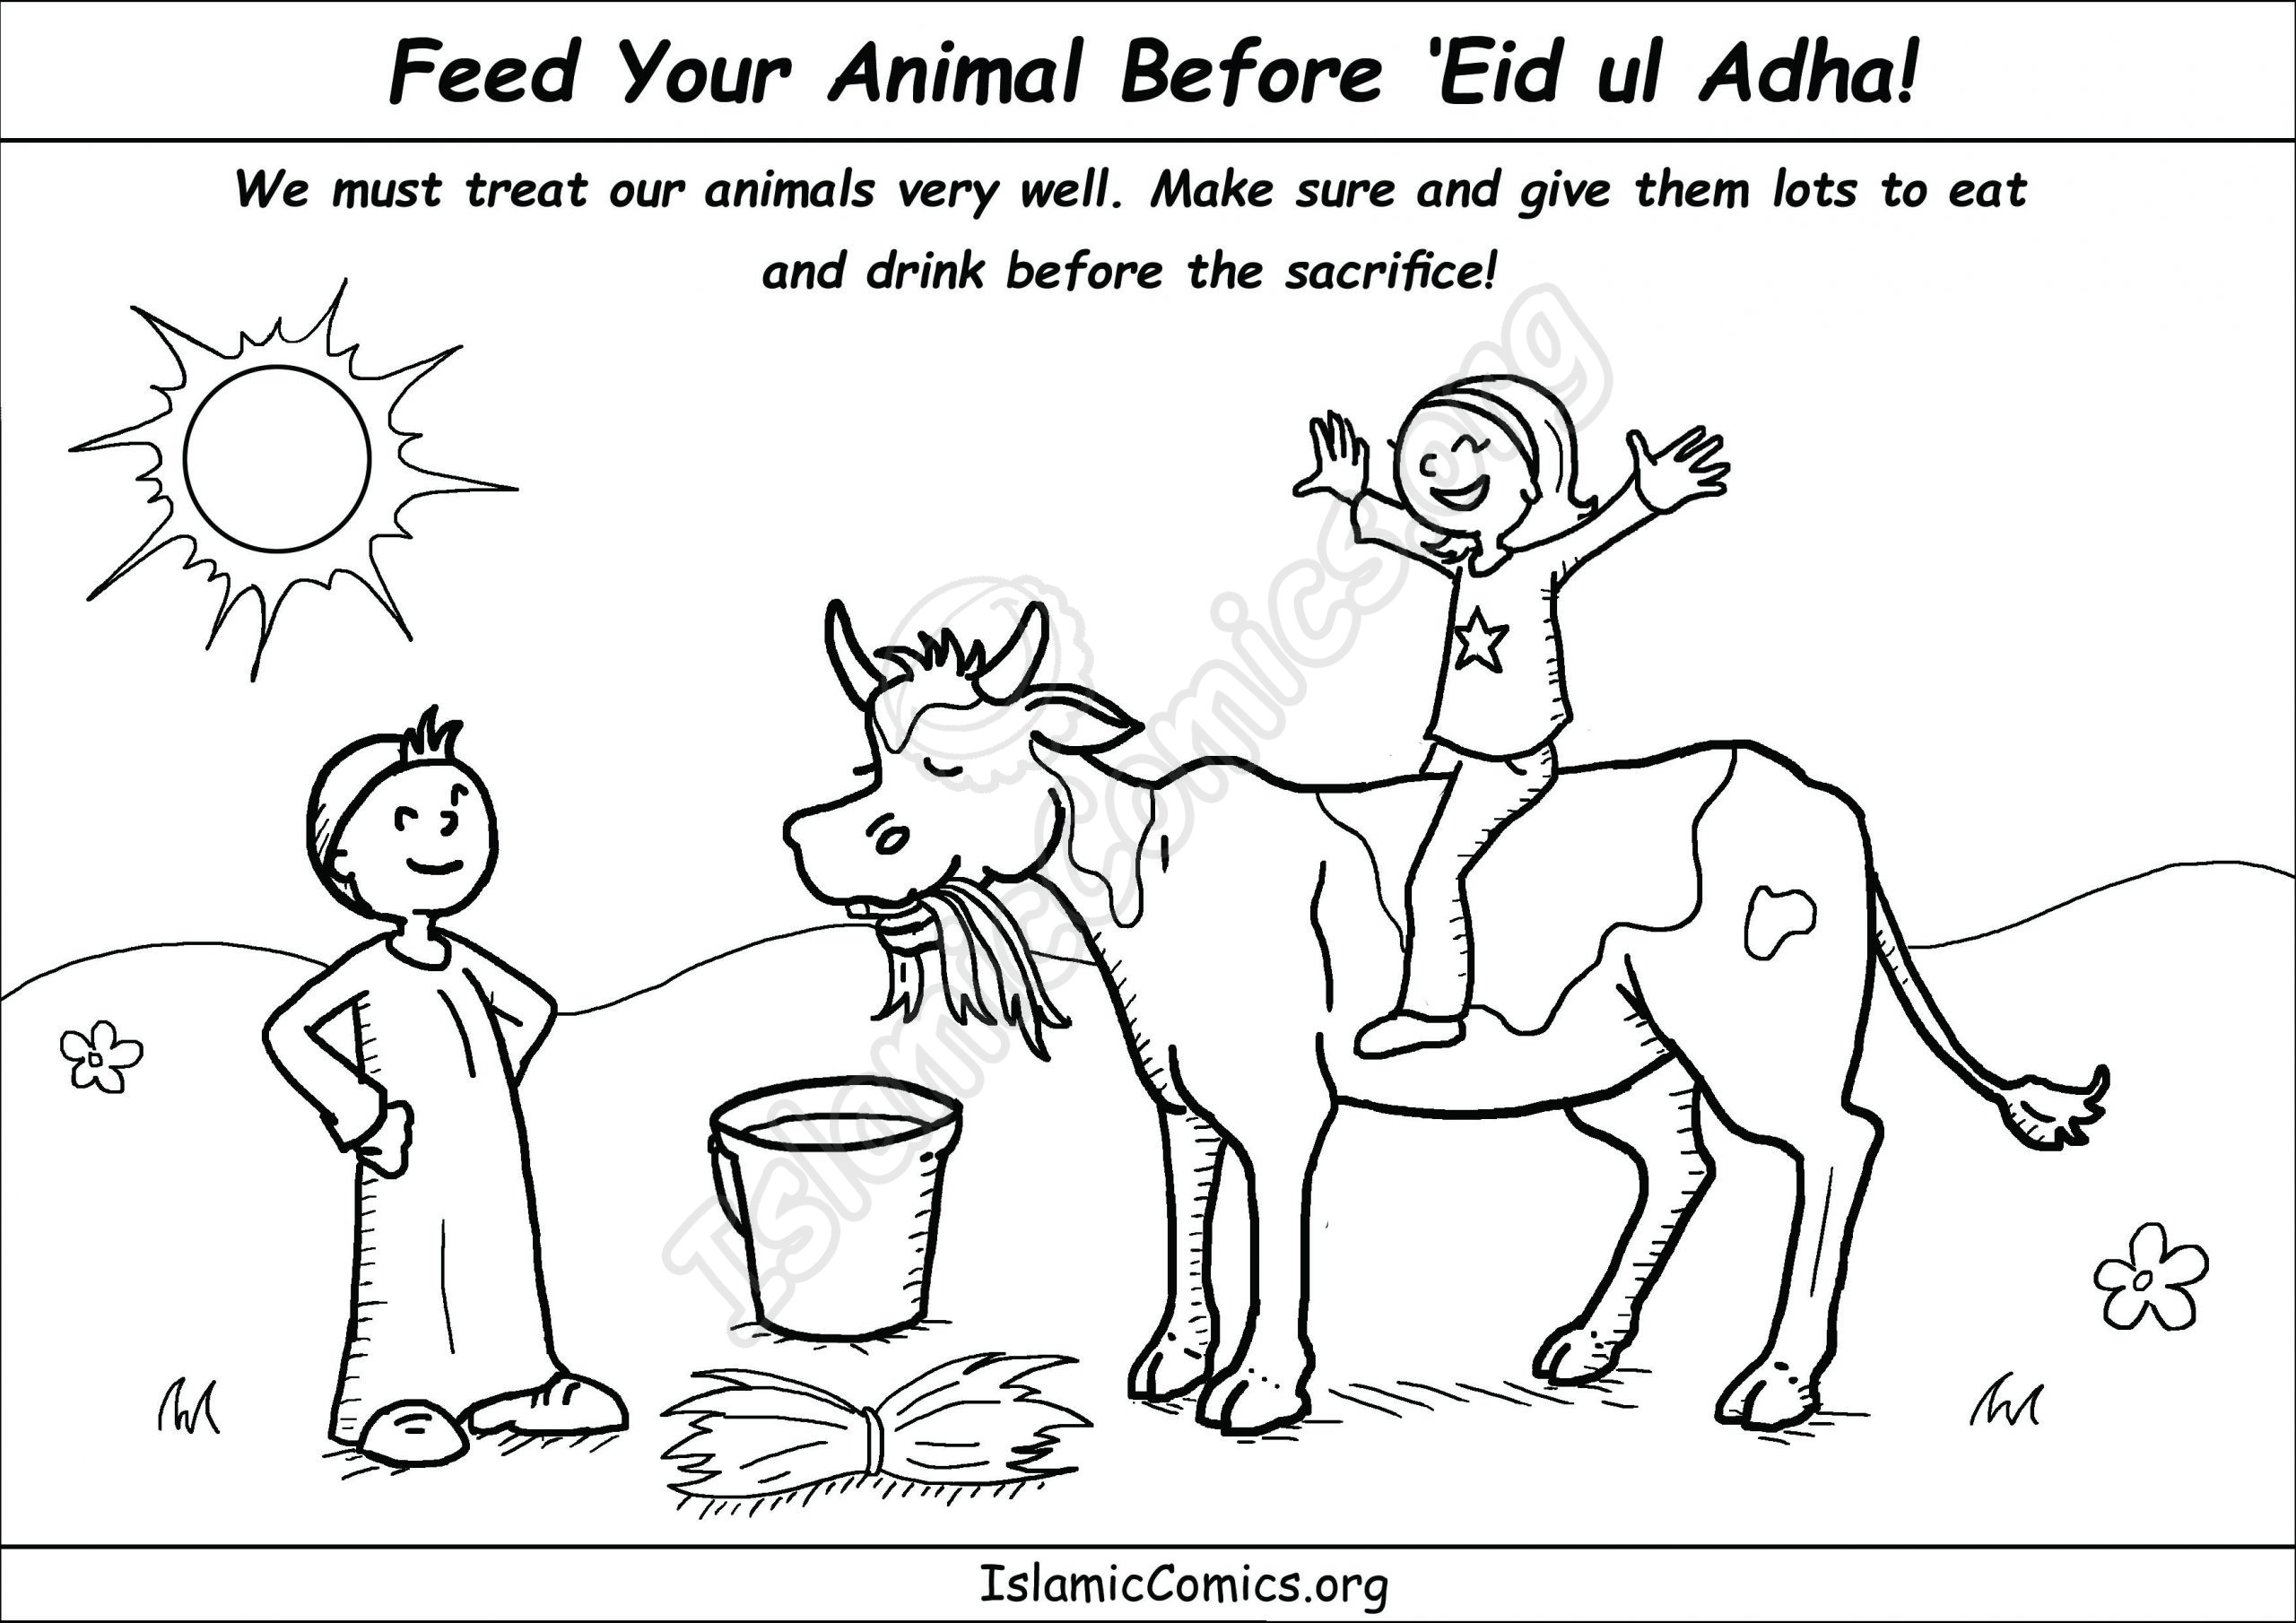 Boy and Girl Feeding Cow Before 'Eid ul Adha - IslamicComics.org